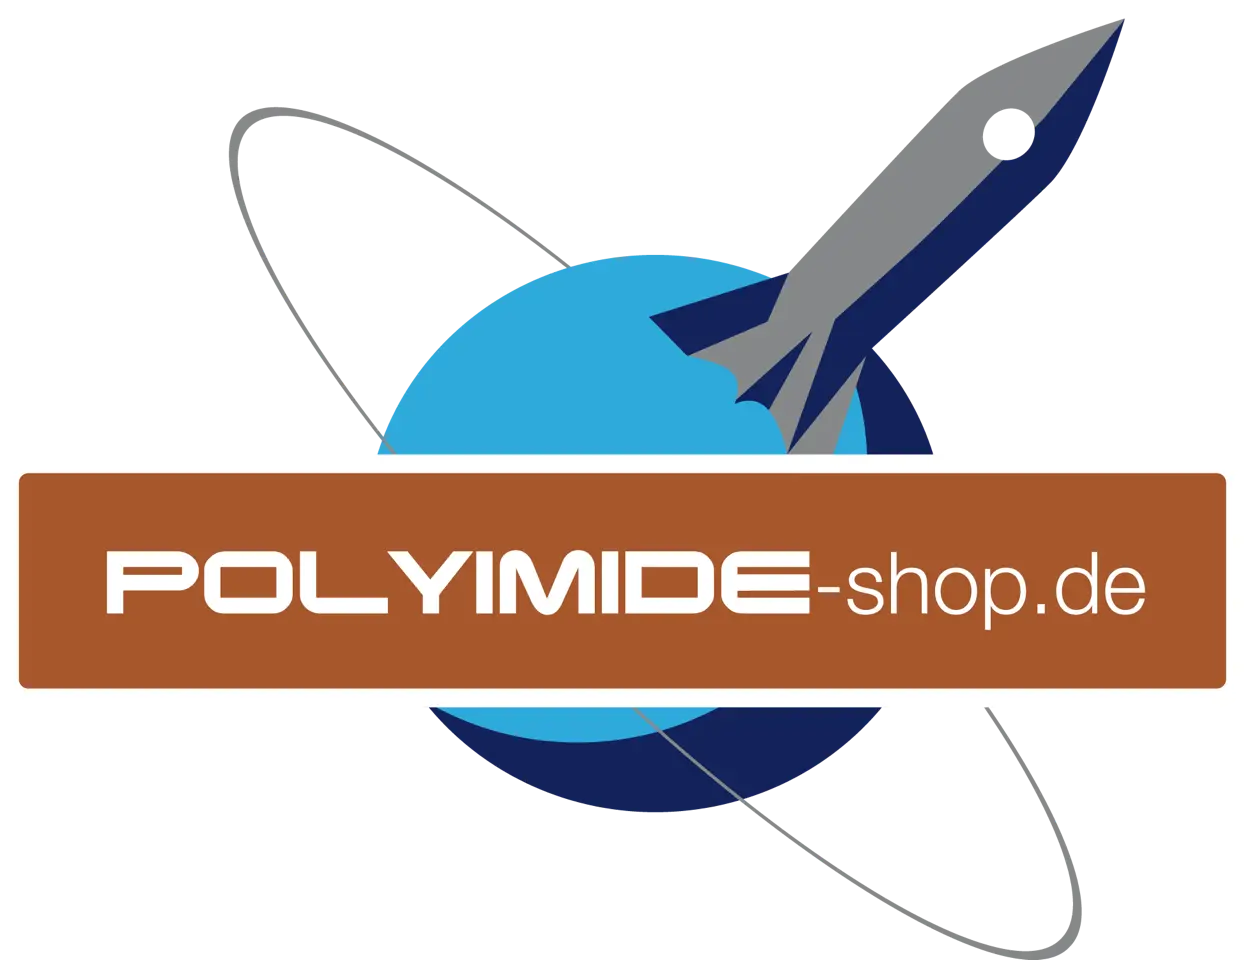 Polyimide-shop.de"